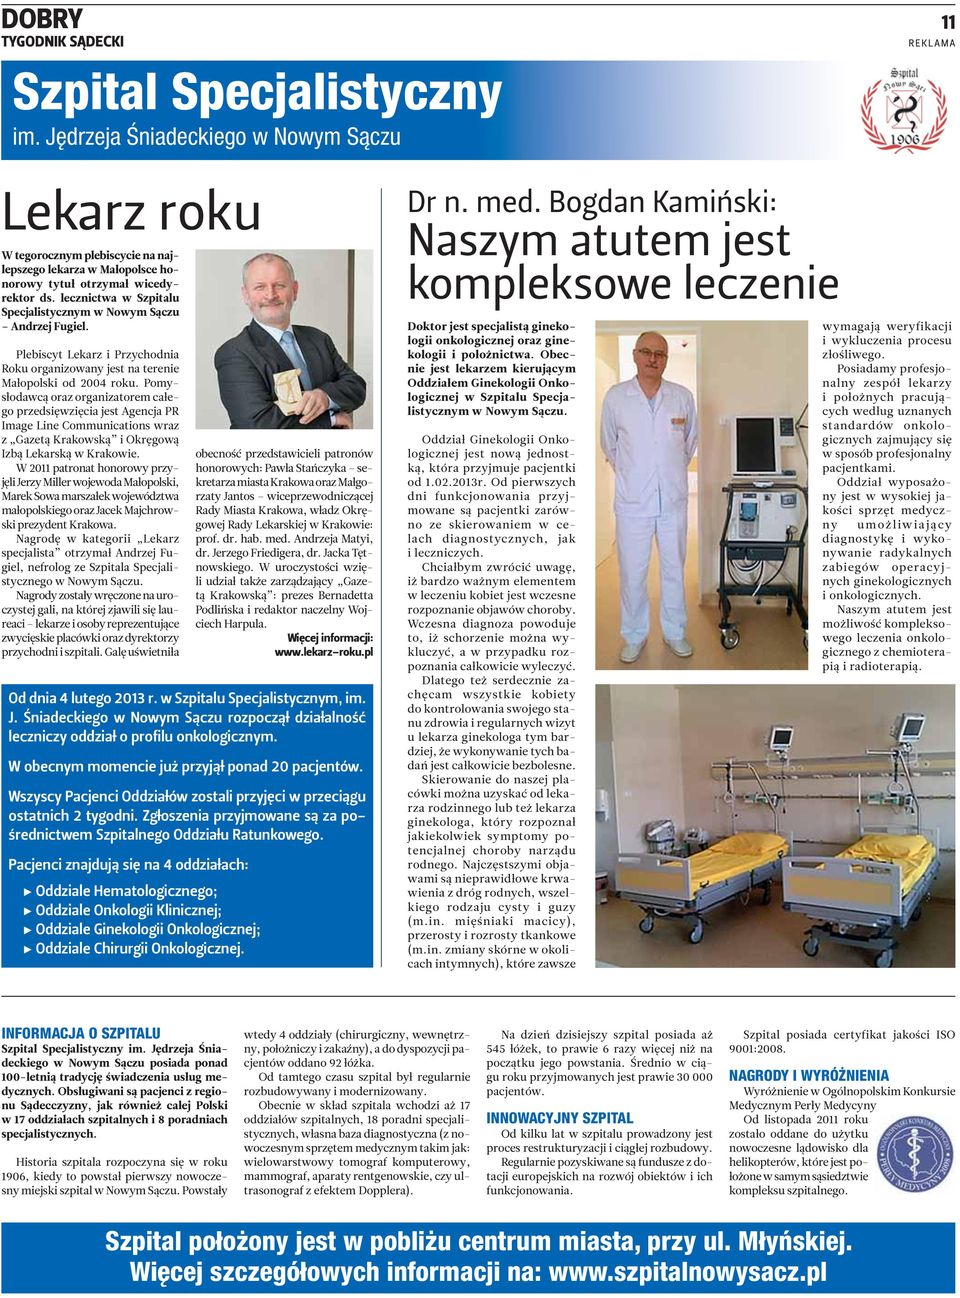 lecznictwa w Szpitalu Specjalistycznym w Nowym Sączu Andrzej Fugiel. Plebiscyt Lekarz i Przychodnia Roku organizowany jest na terenie Małopolski od 2004 roku.